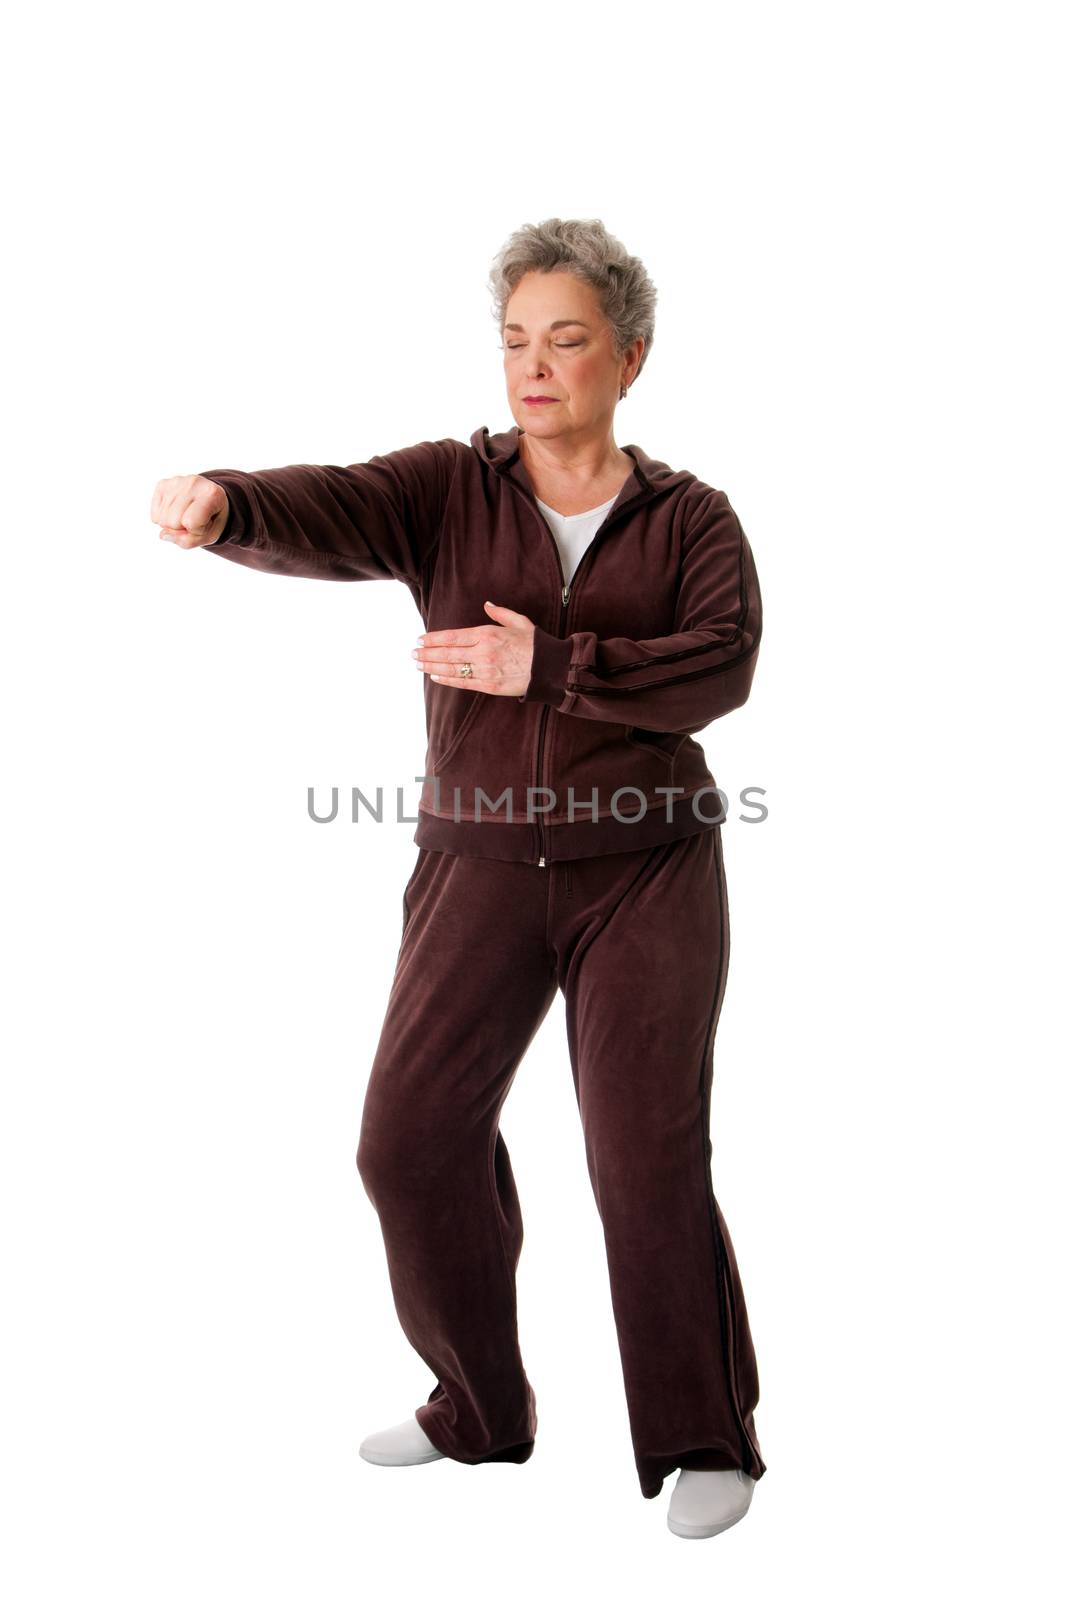 Senior woman doing Tai Chi Yoga exercise by phakimata